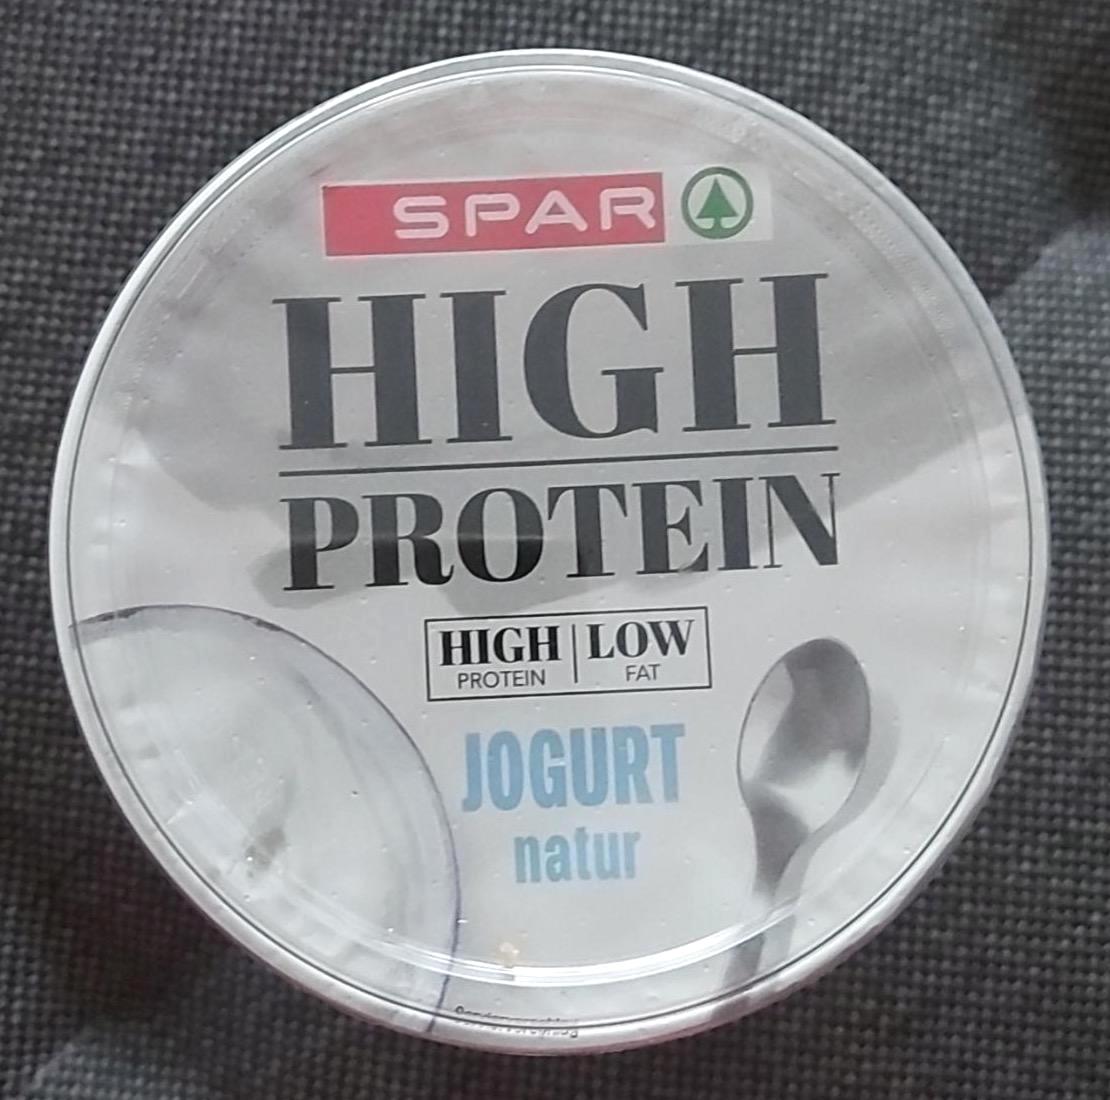 Képek - High protein joghurt Spar